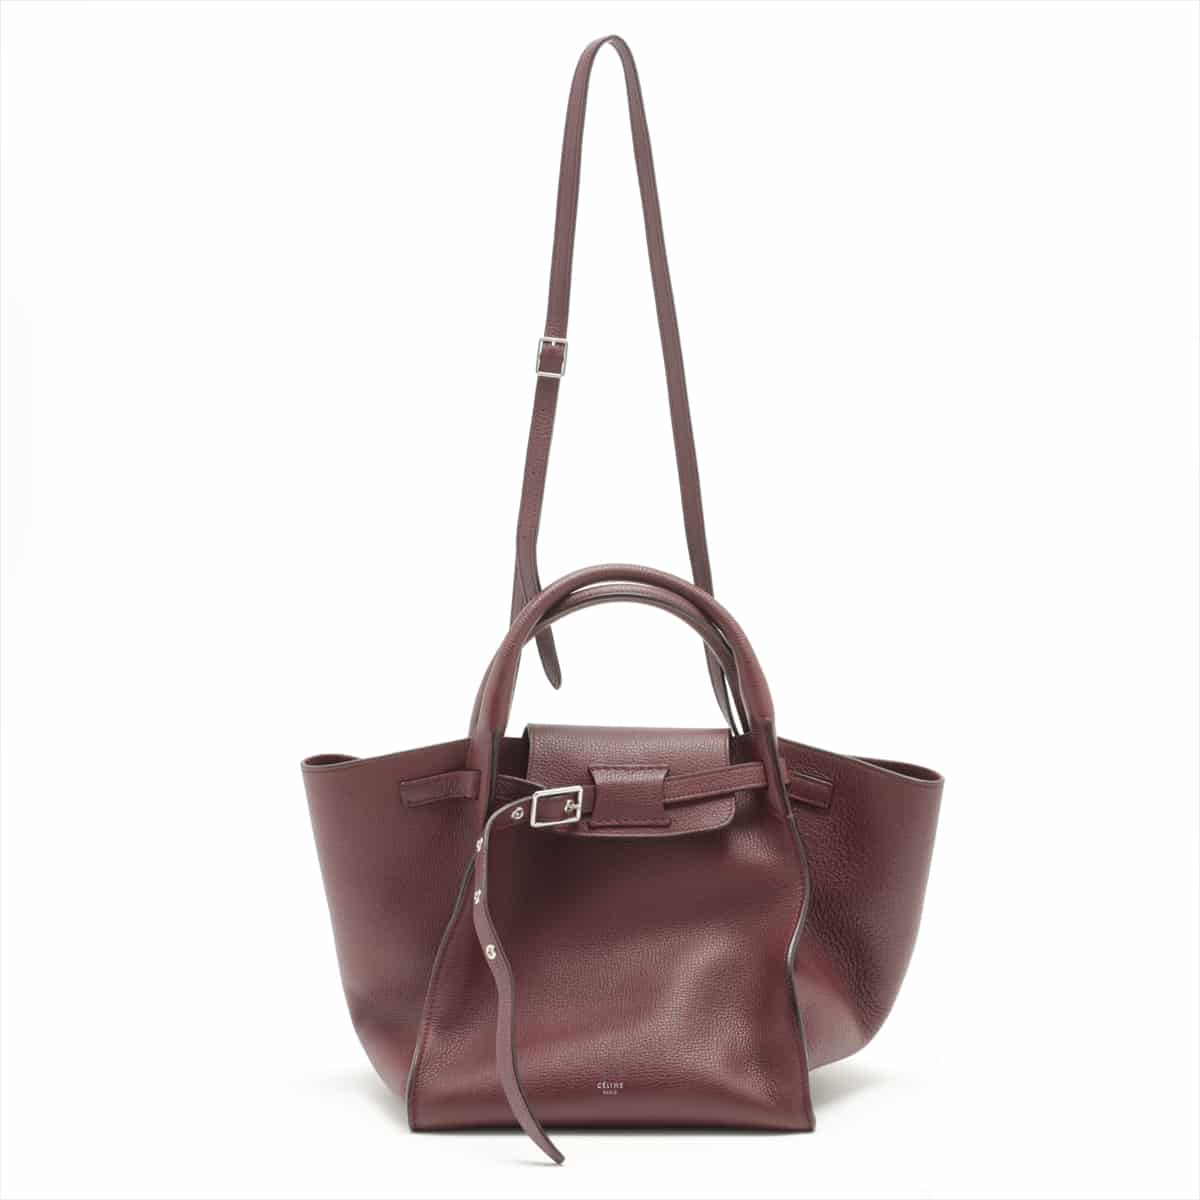 CELINE BIG BAG small Leather 2way shoulder bag Bordeaux